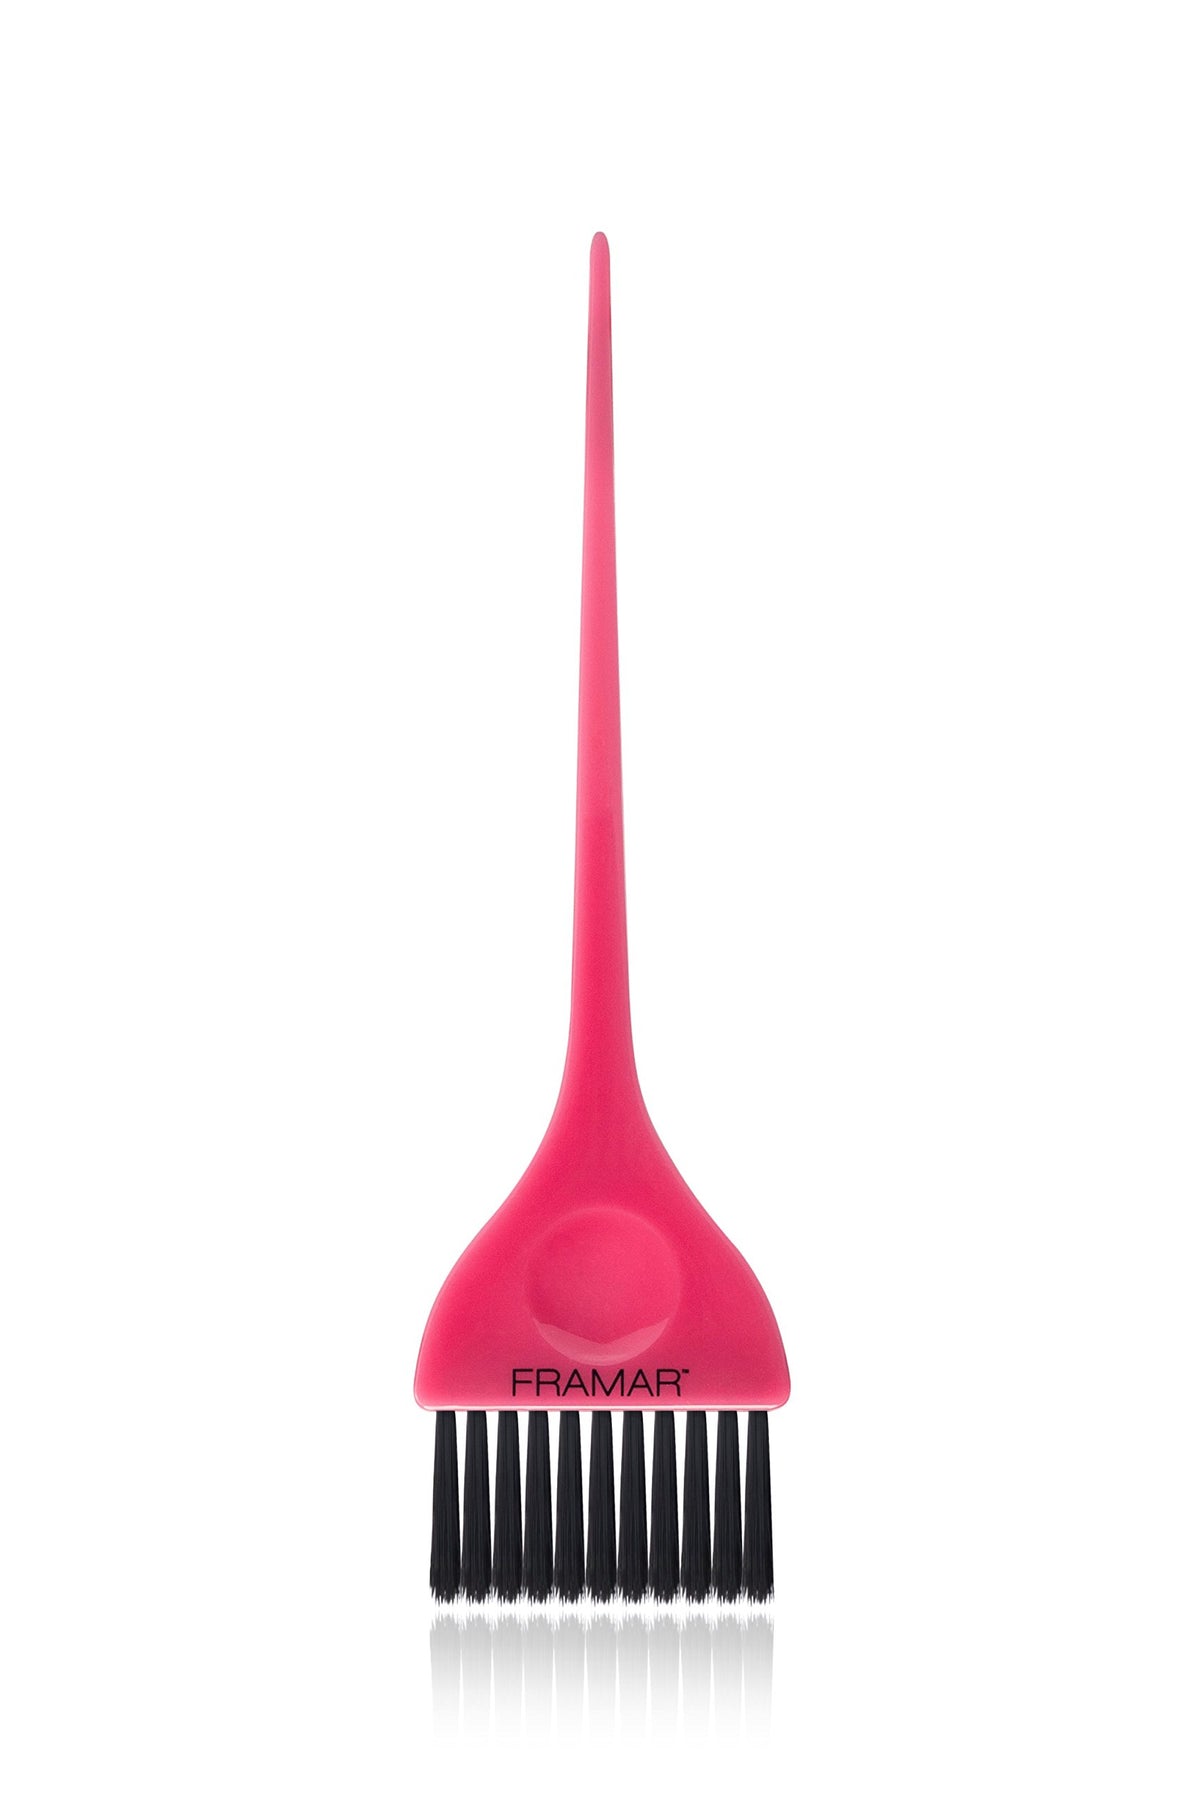 Framar Classic Hair Dye Brush – Hair Colour Brush for Highlights Hair Dye Kit, Hair Tint Brush for Highlight Kit, Tinting Brush for Bleach Hair Dye, Hair Bleach Kit, Hair Colouring Brush – Pink